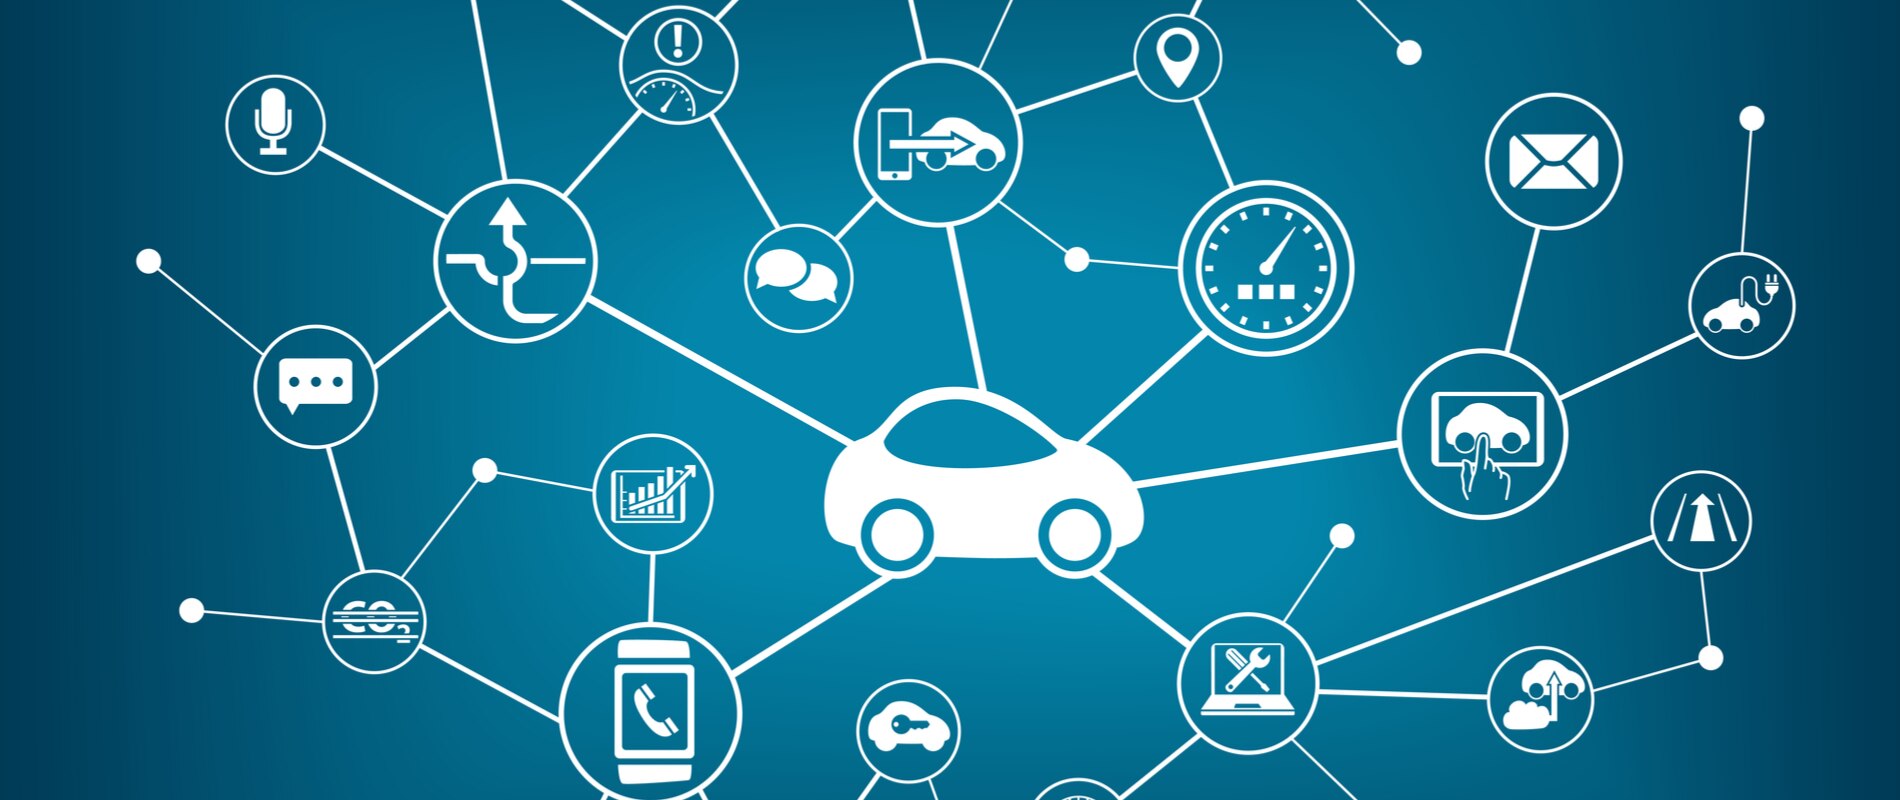 coches-conectados-autonomos-inteligentes-trafico-internet-cosas-bbva